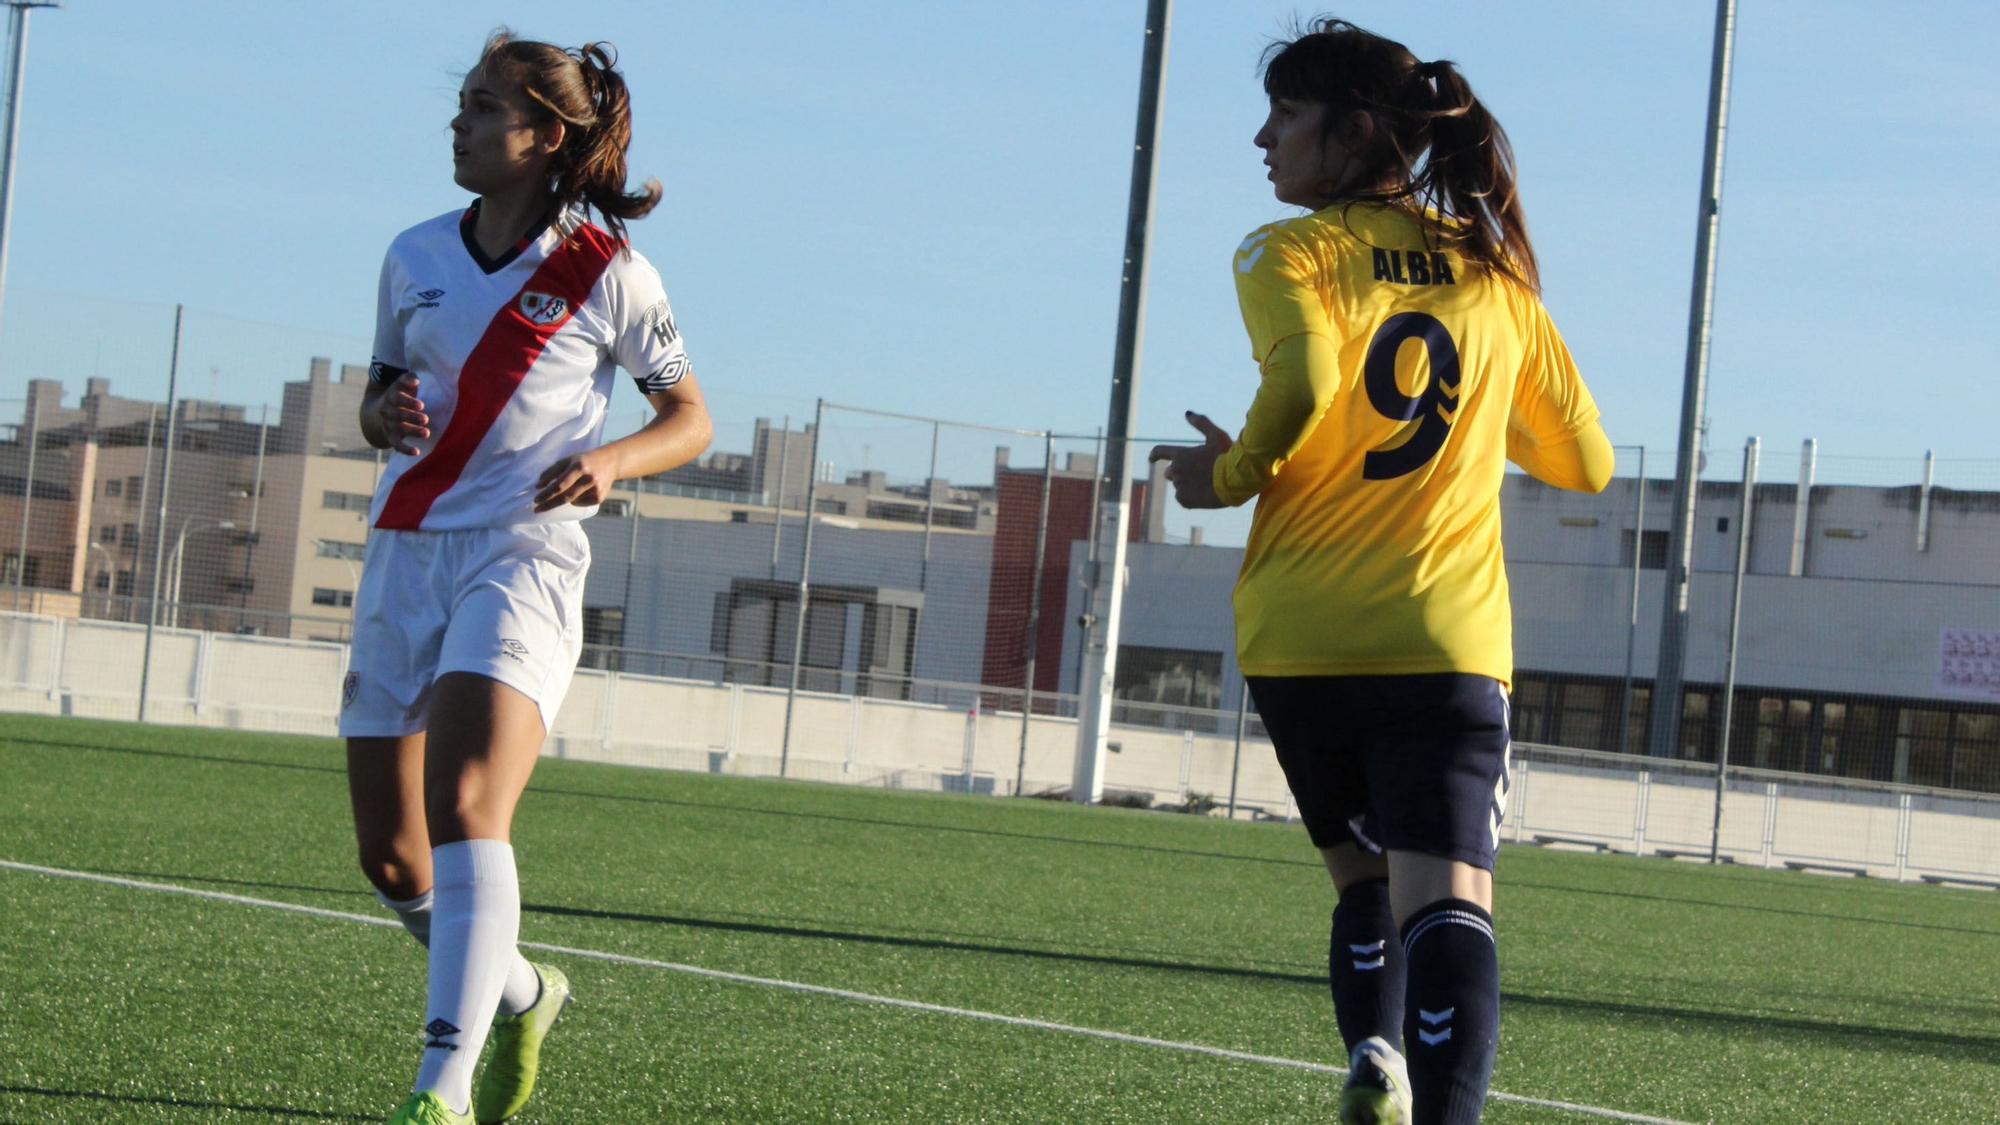 Alba Palacios, jugadora del Torrelodones CF, en una acción de partido